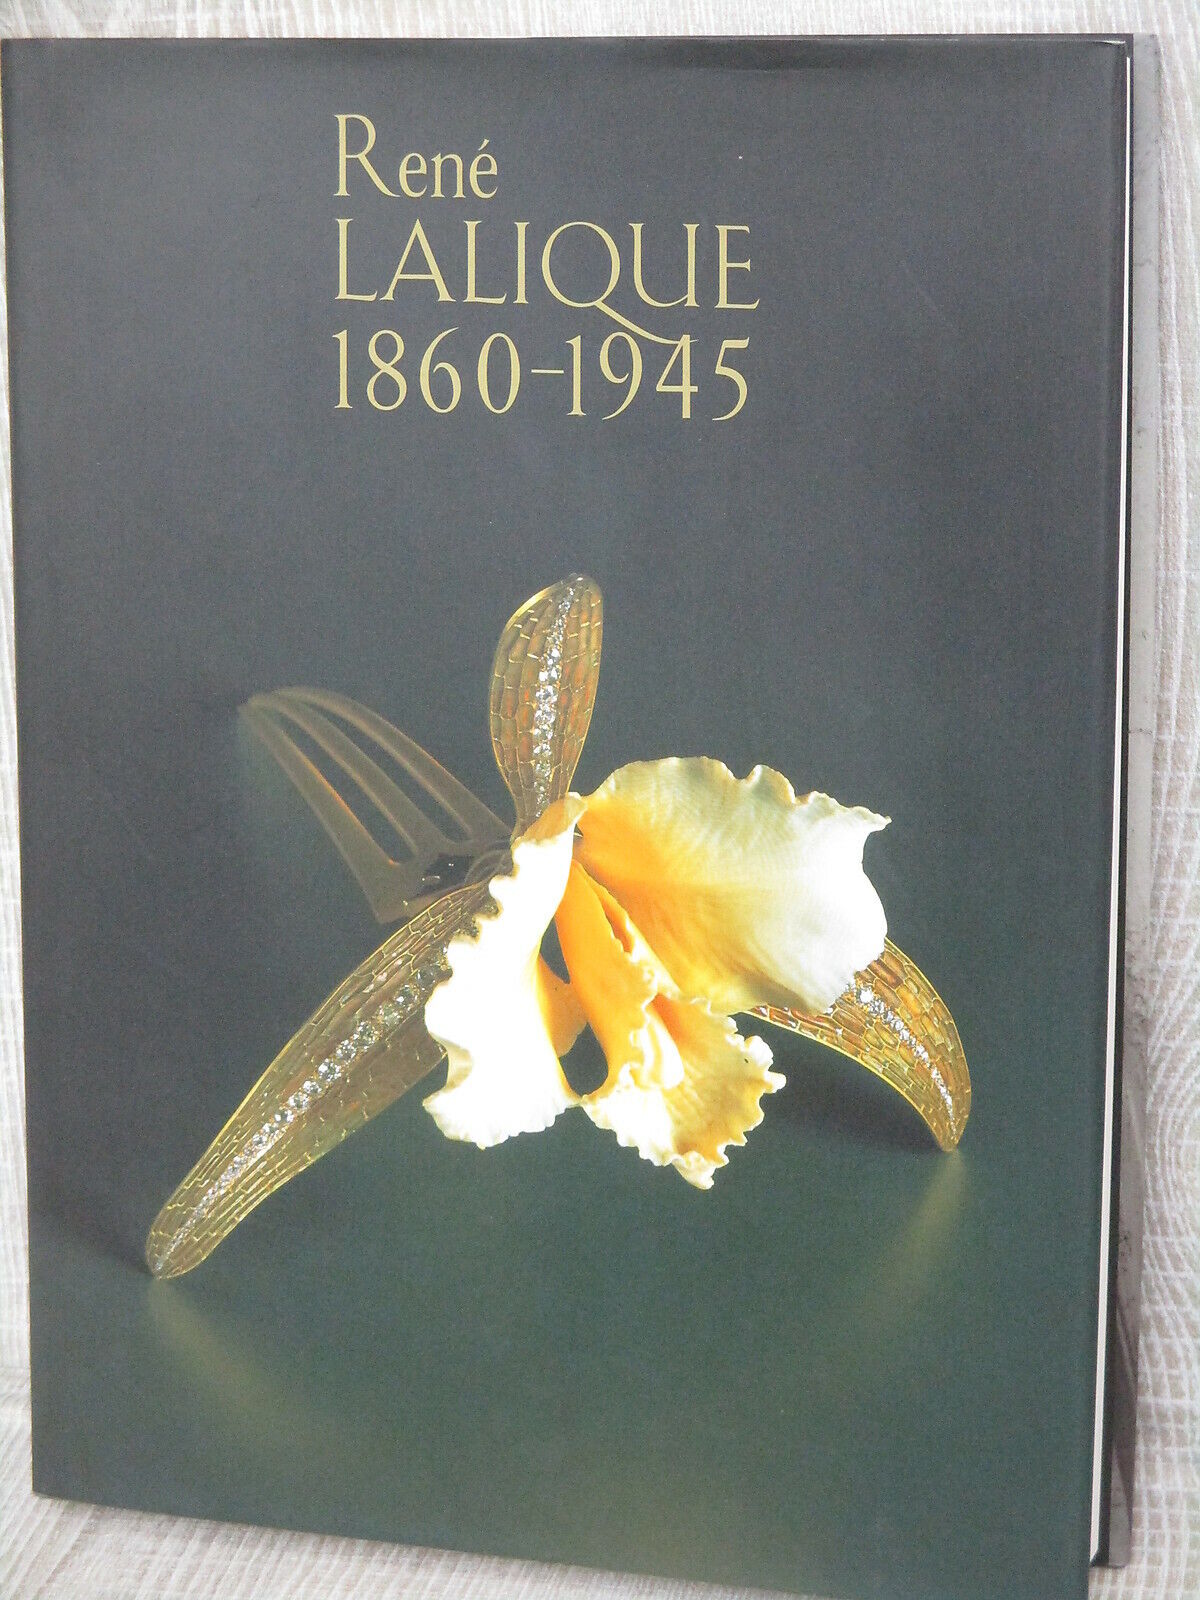 RENE LALIQUE 1860-1945 Art Nouveau Deco Antique Glass Photo Book Ltd Japonism *